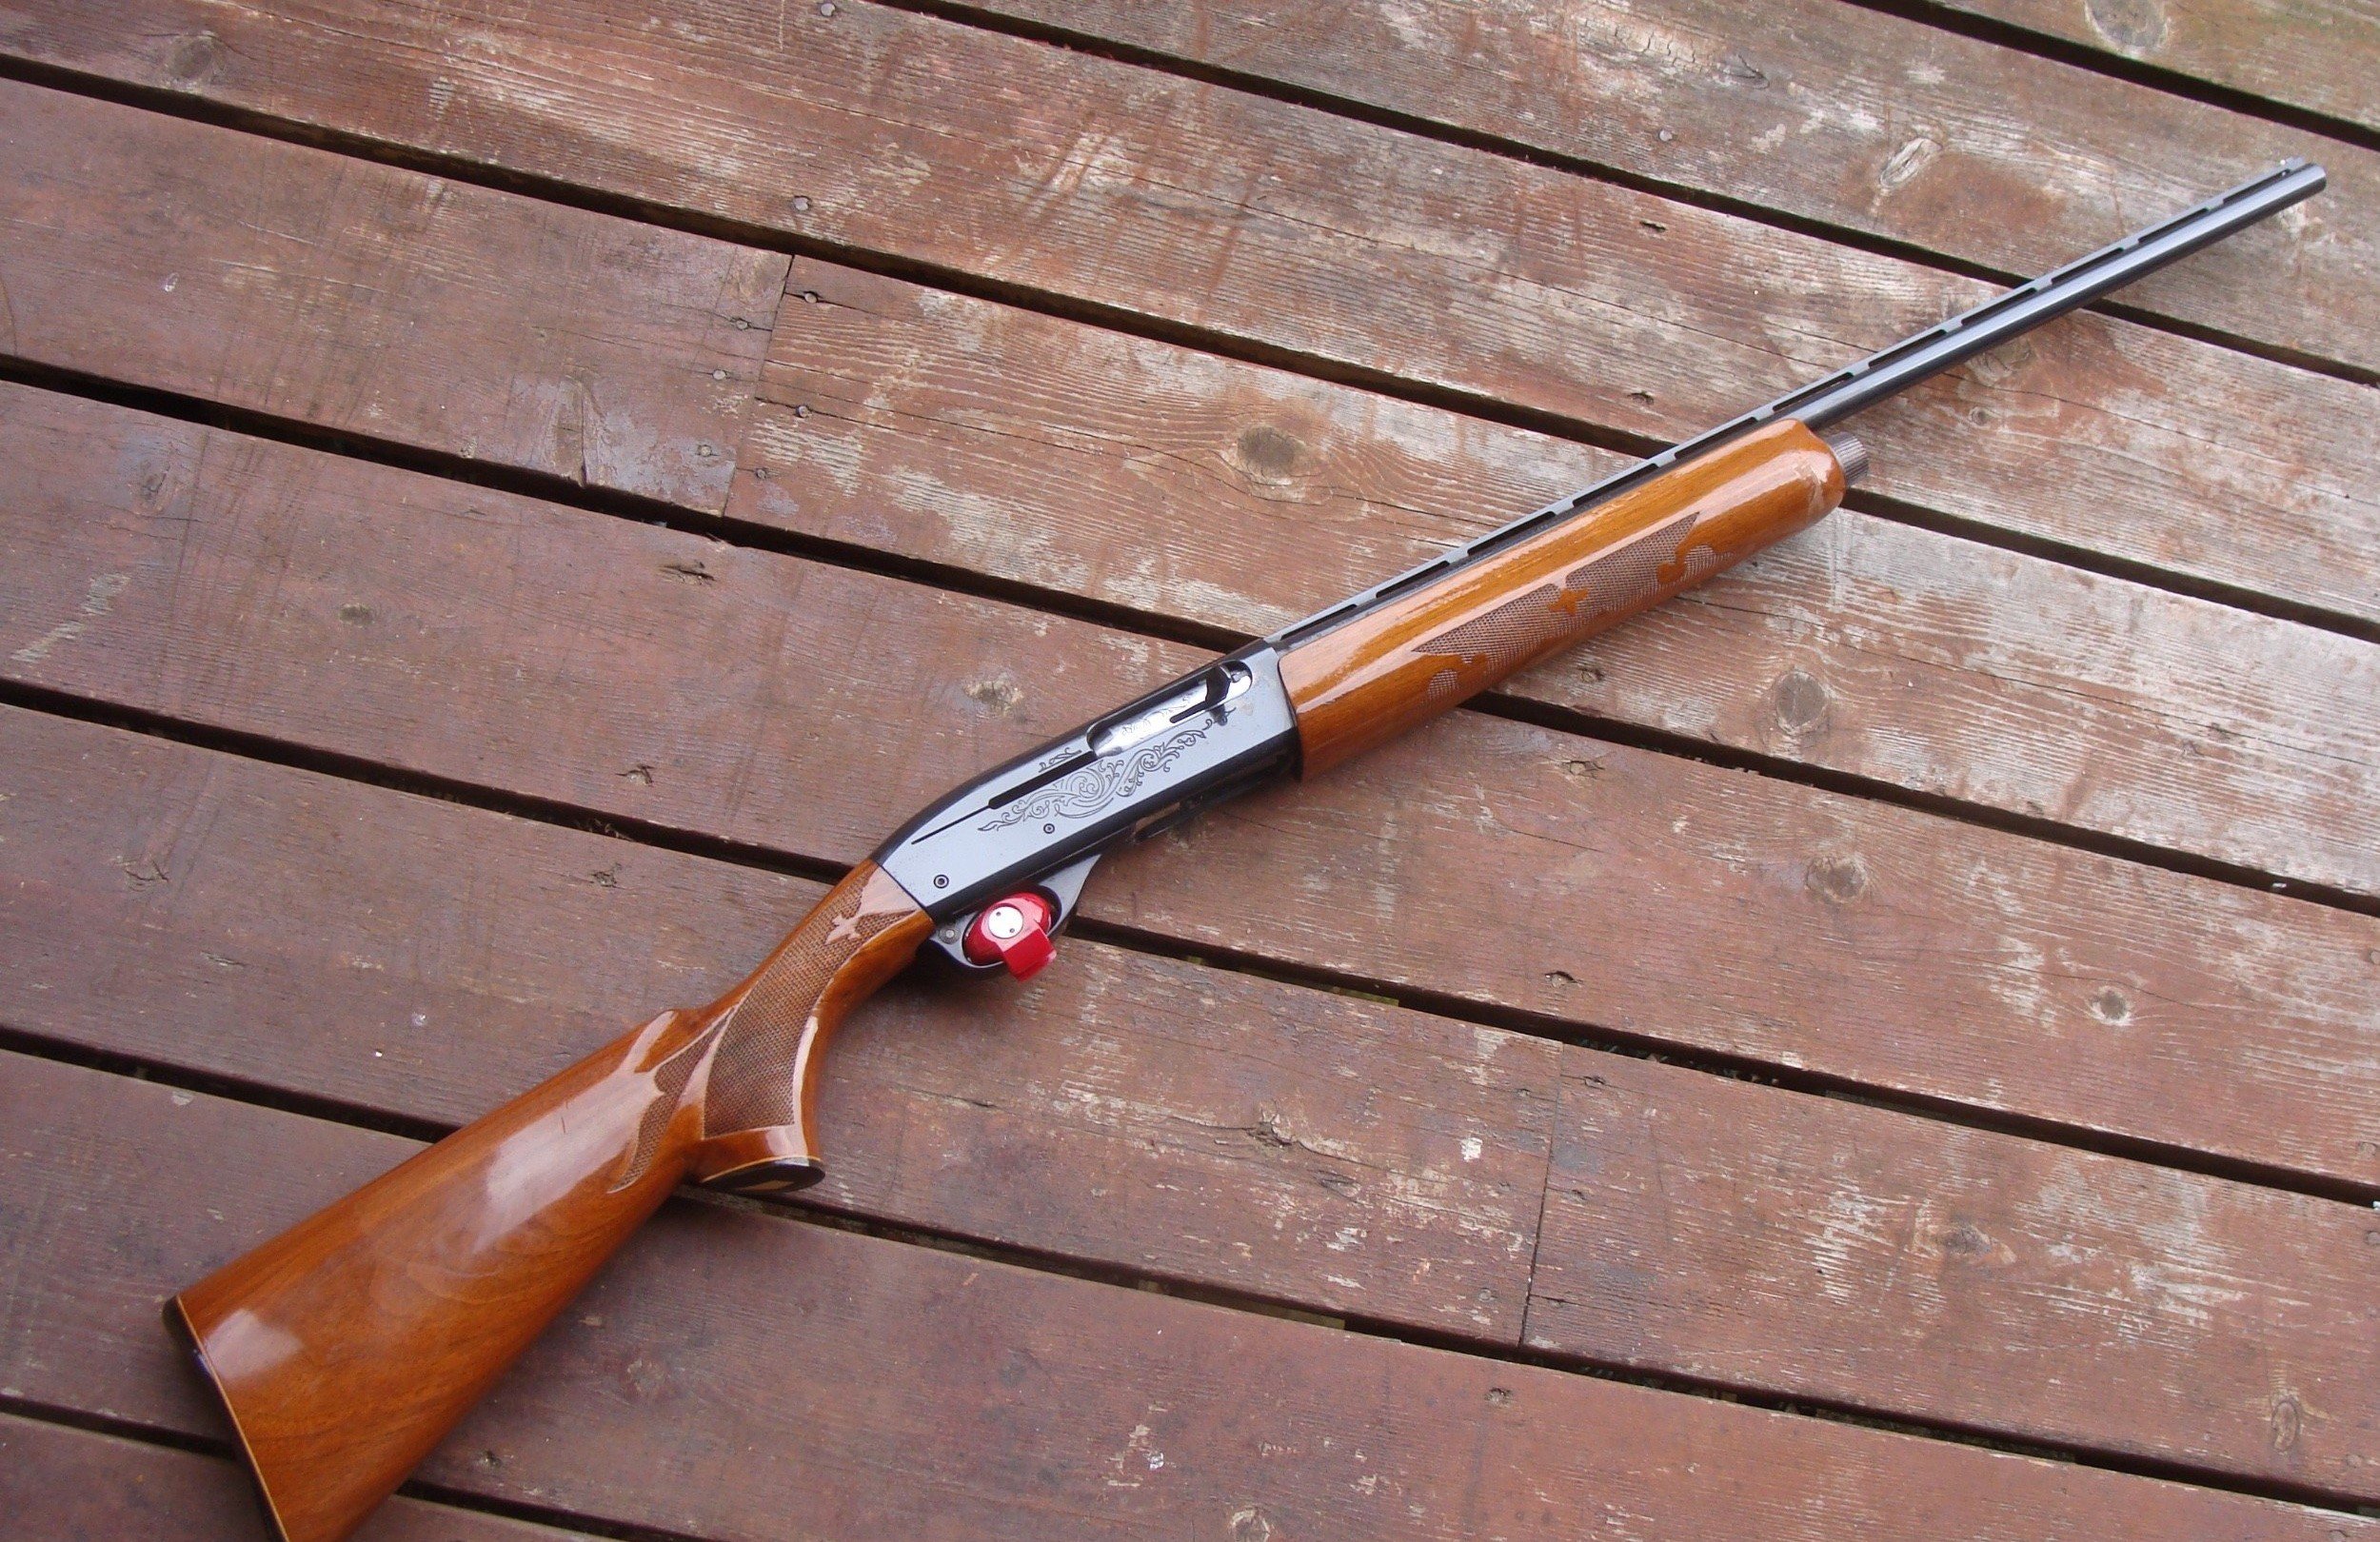 Remington 1100, chambered for 28 ga 